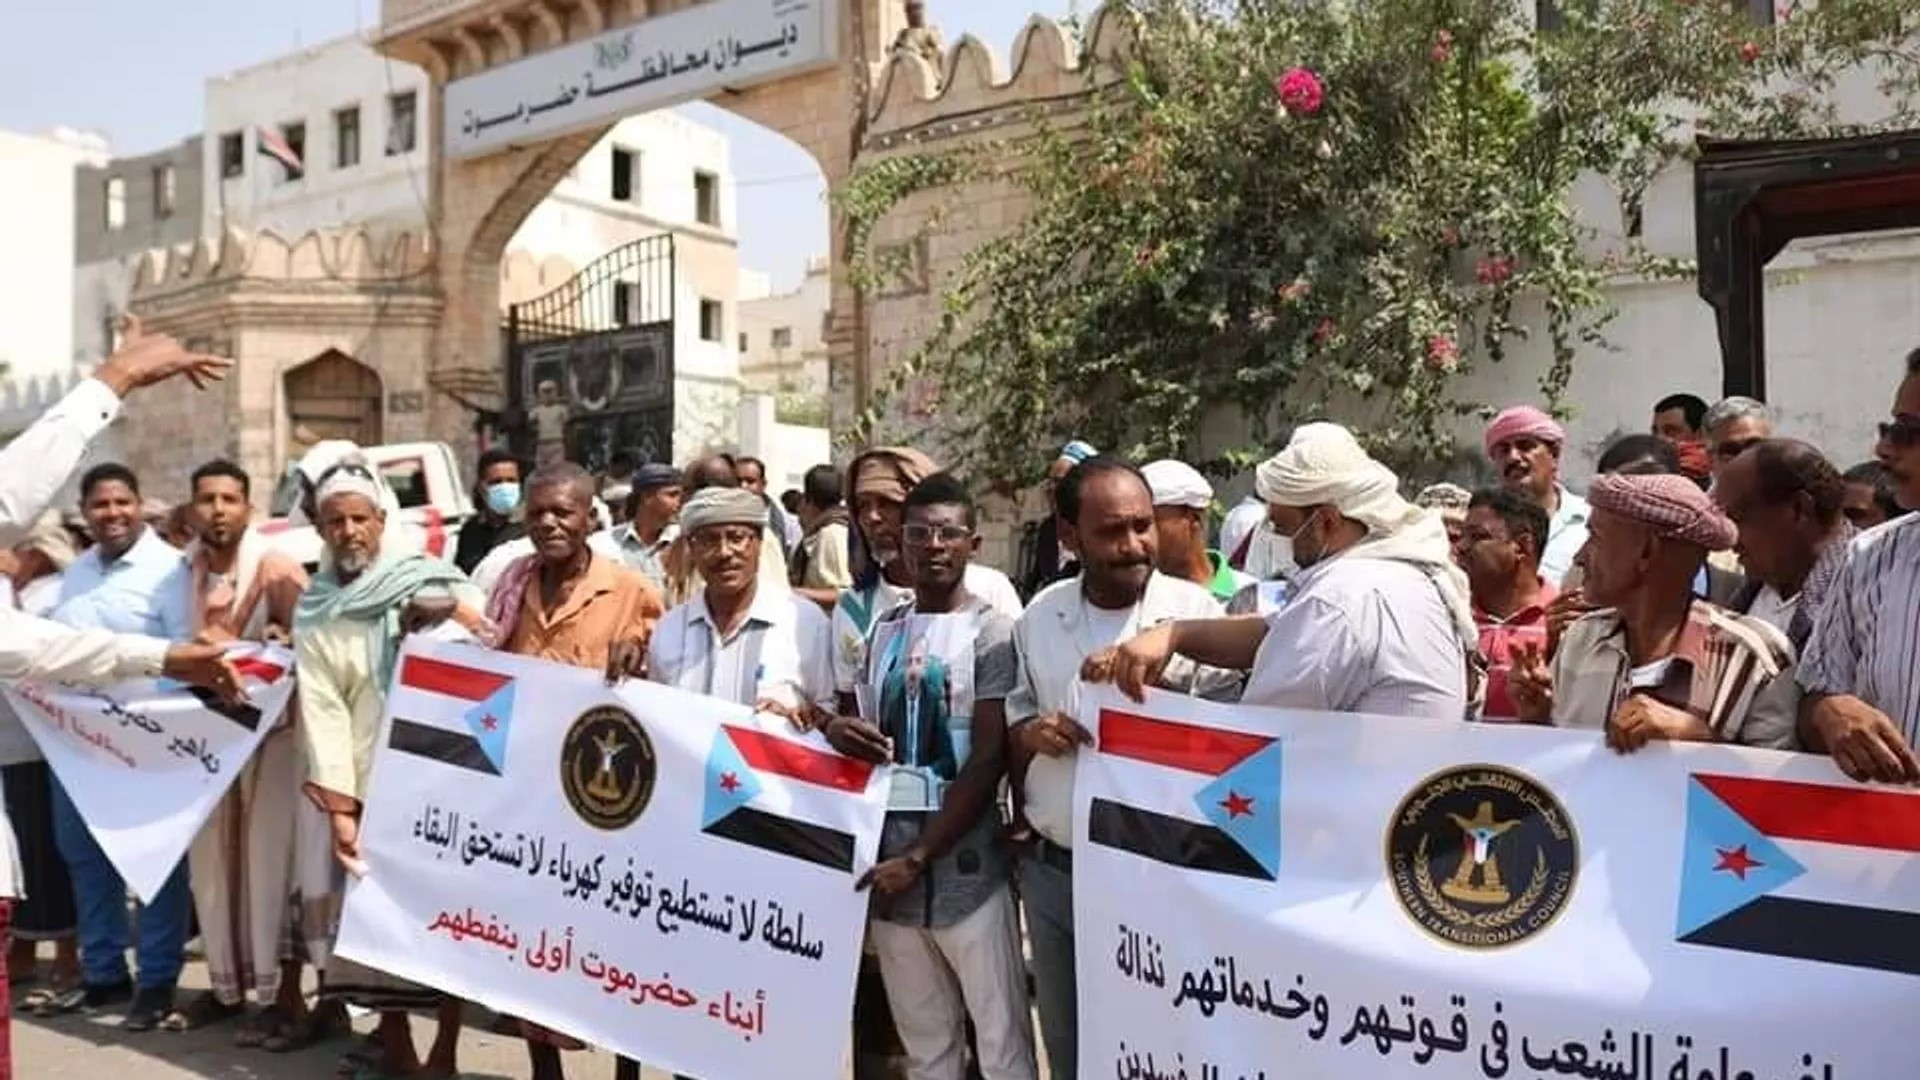 اليمن... حضرموت تنتظر ساعة الصفر بعد انتهاء مهلة إخراج قوات المنطقة العسكرية الأولى من الإقليم